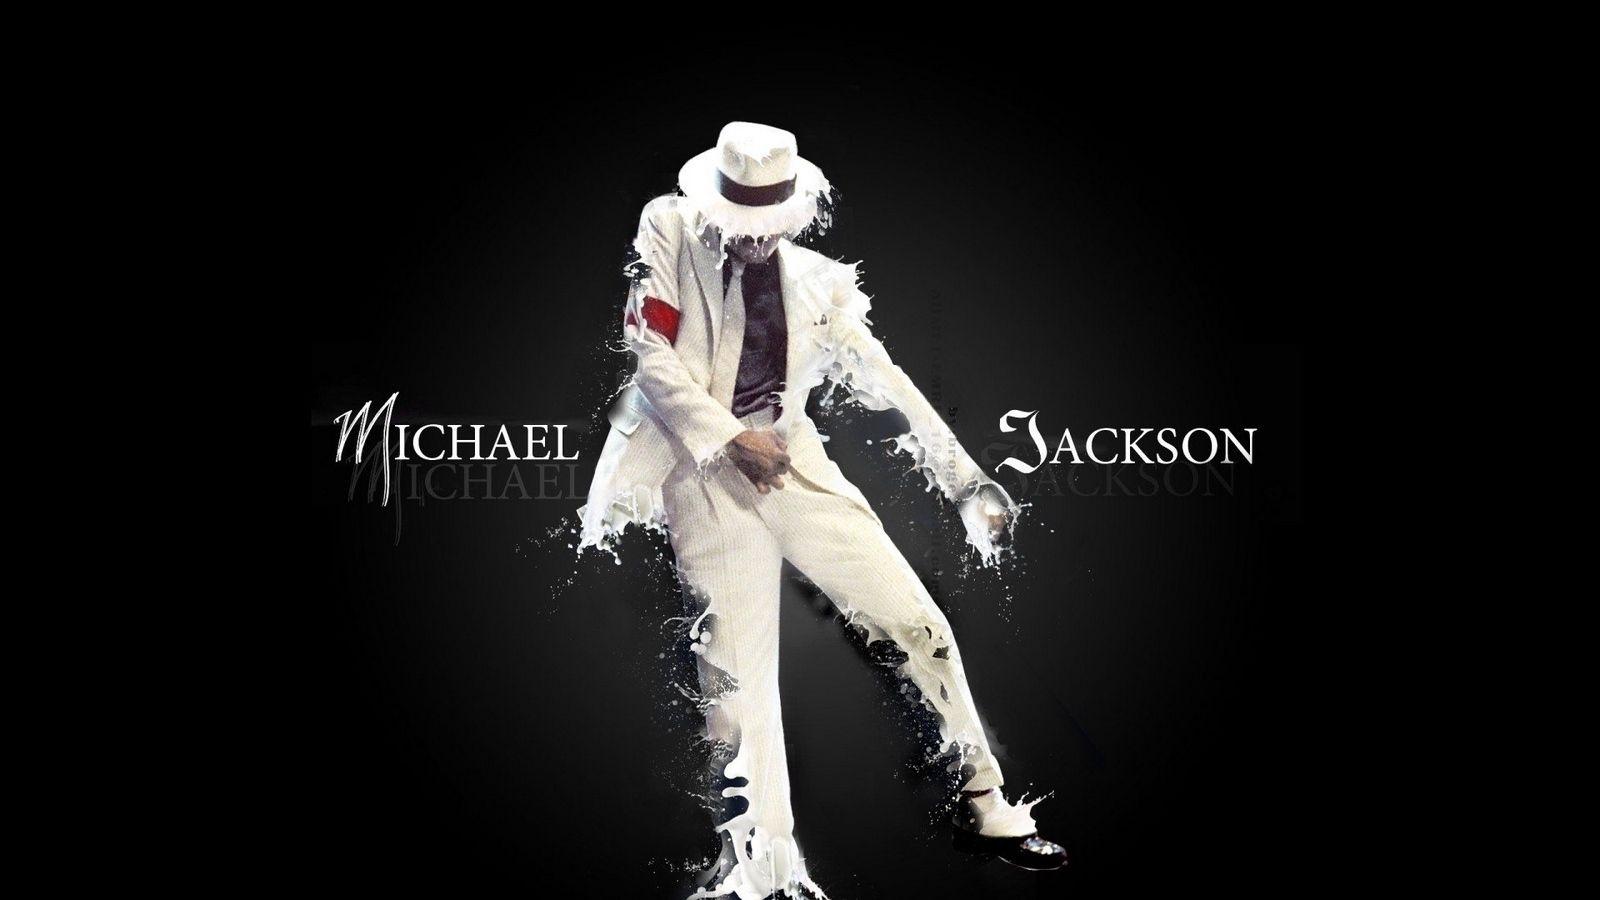 Dancing Wallpaper Of Michael Jackson